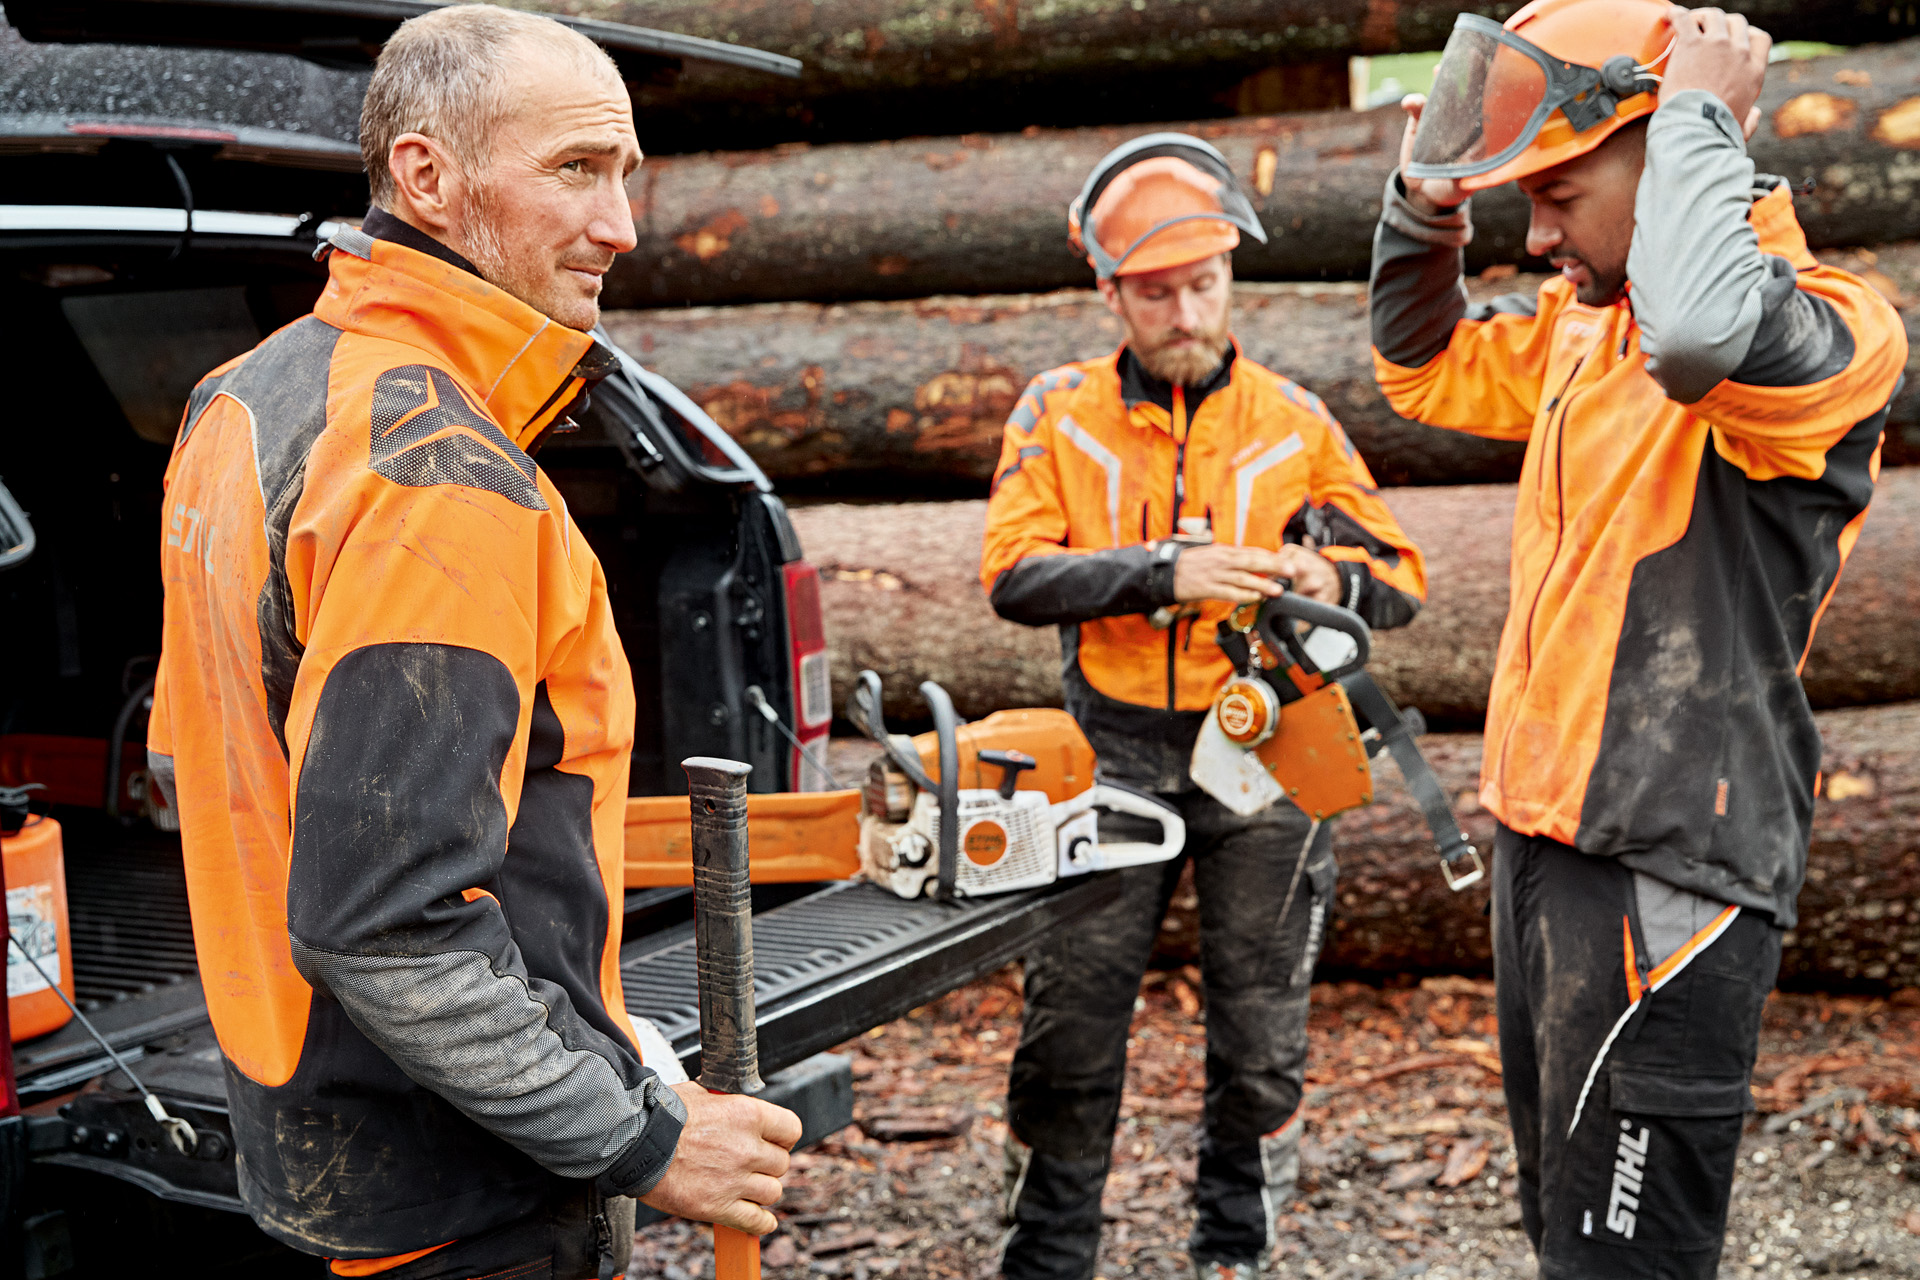 Tre lavoratori forestali con dispositivi di protezione individuale davanti ad un tronco nel bosco.